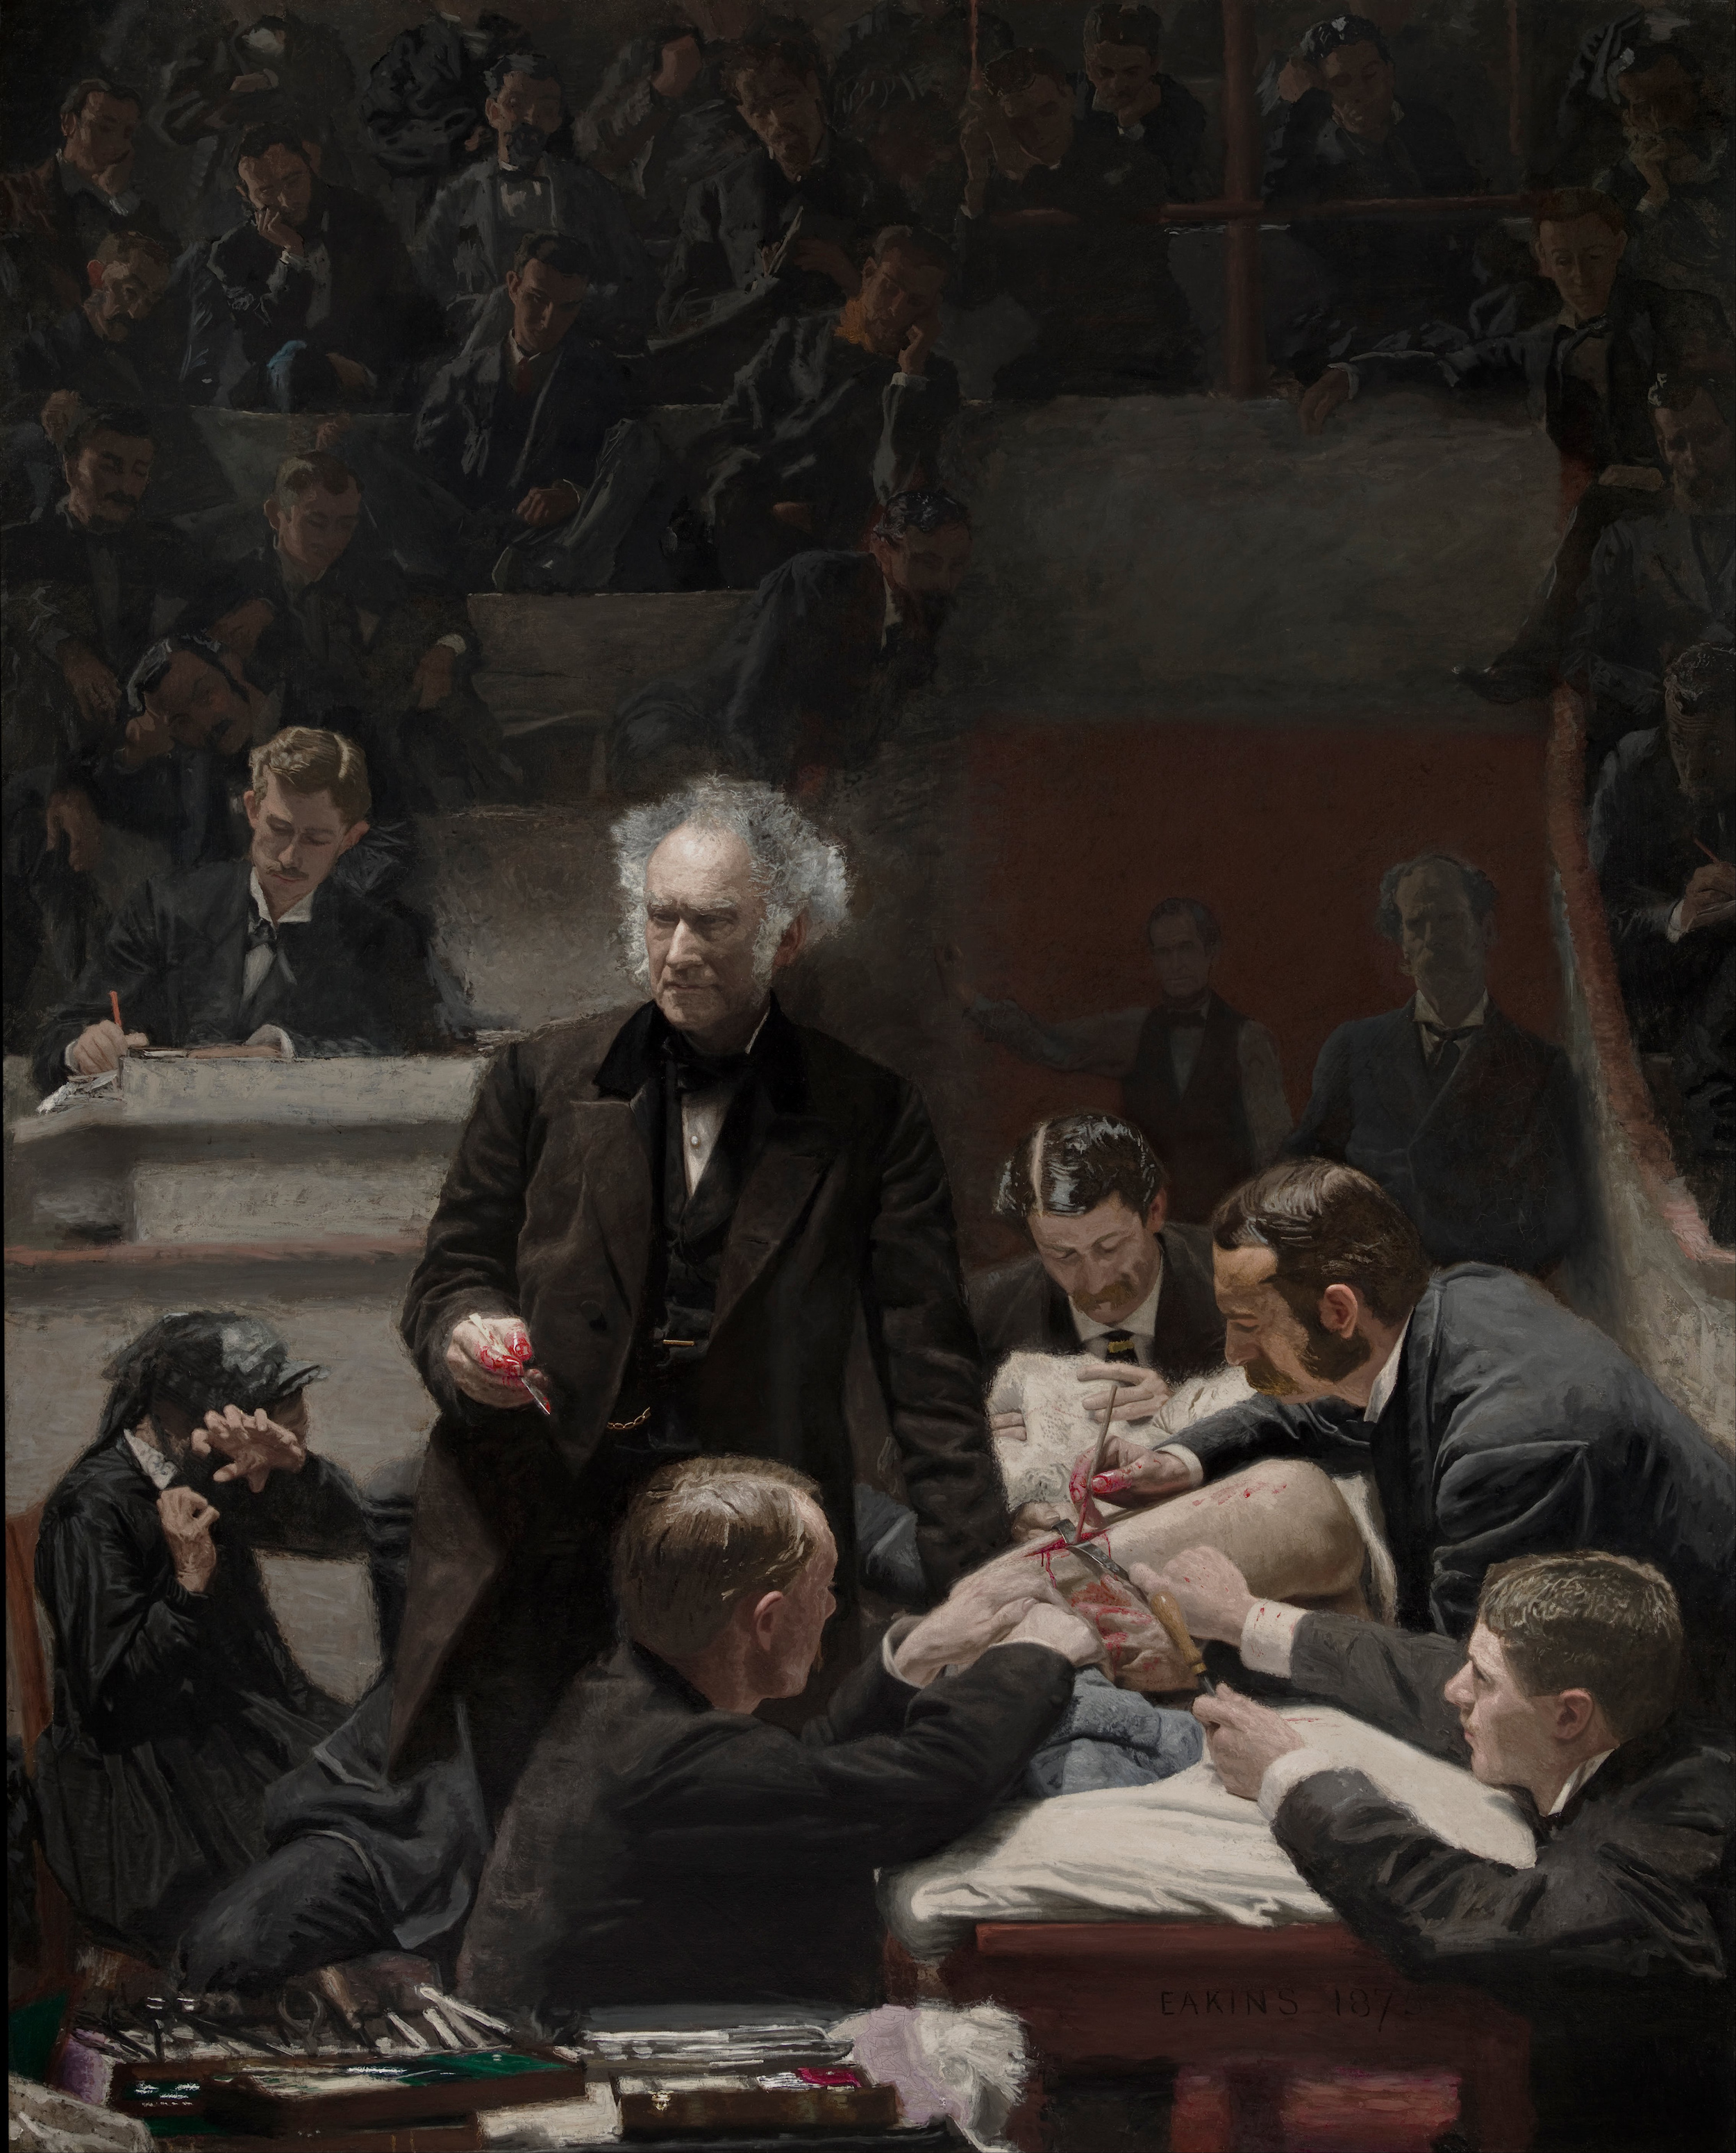 La Clinique Gross by Thomas Eakins - 1872 - 244 x 198 cm 